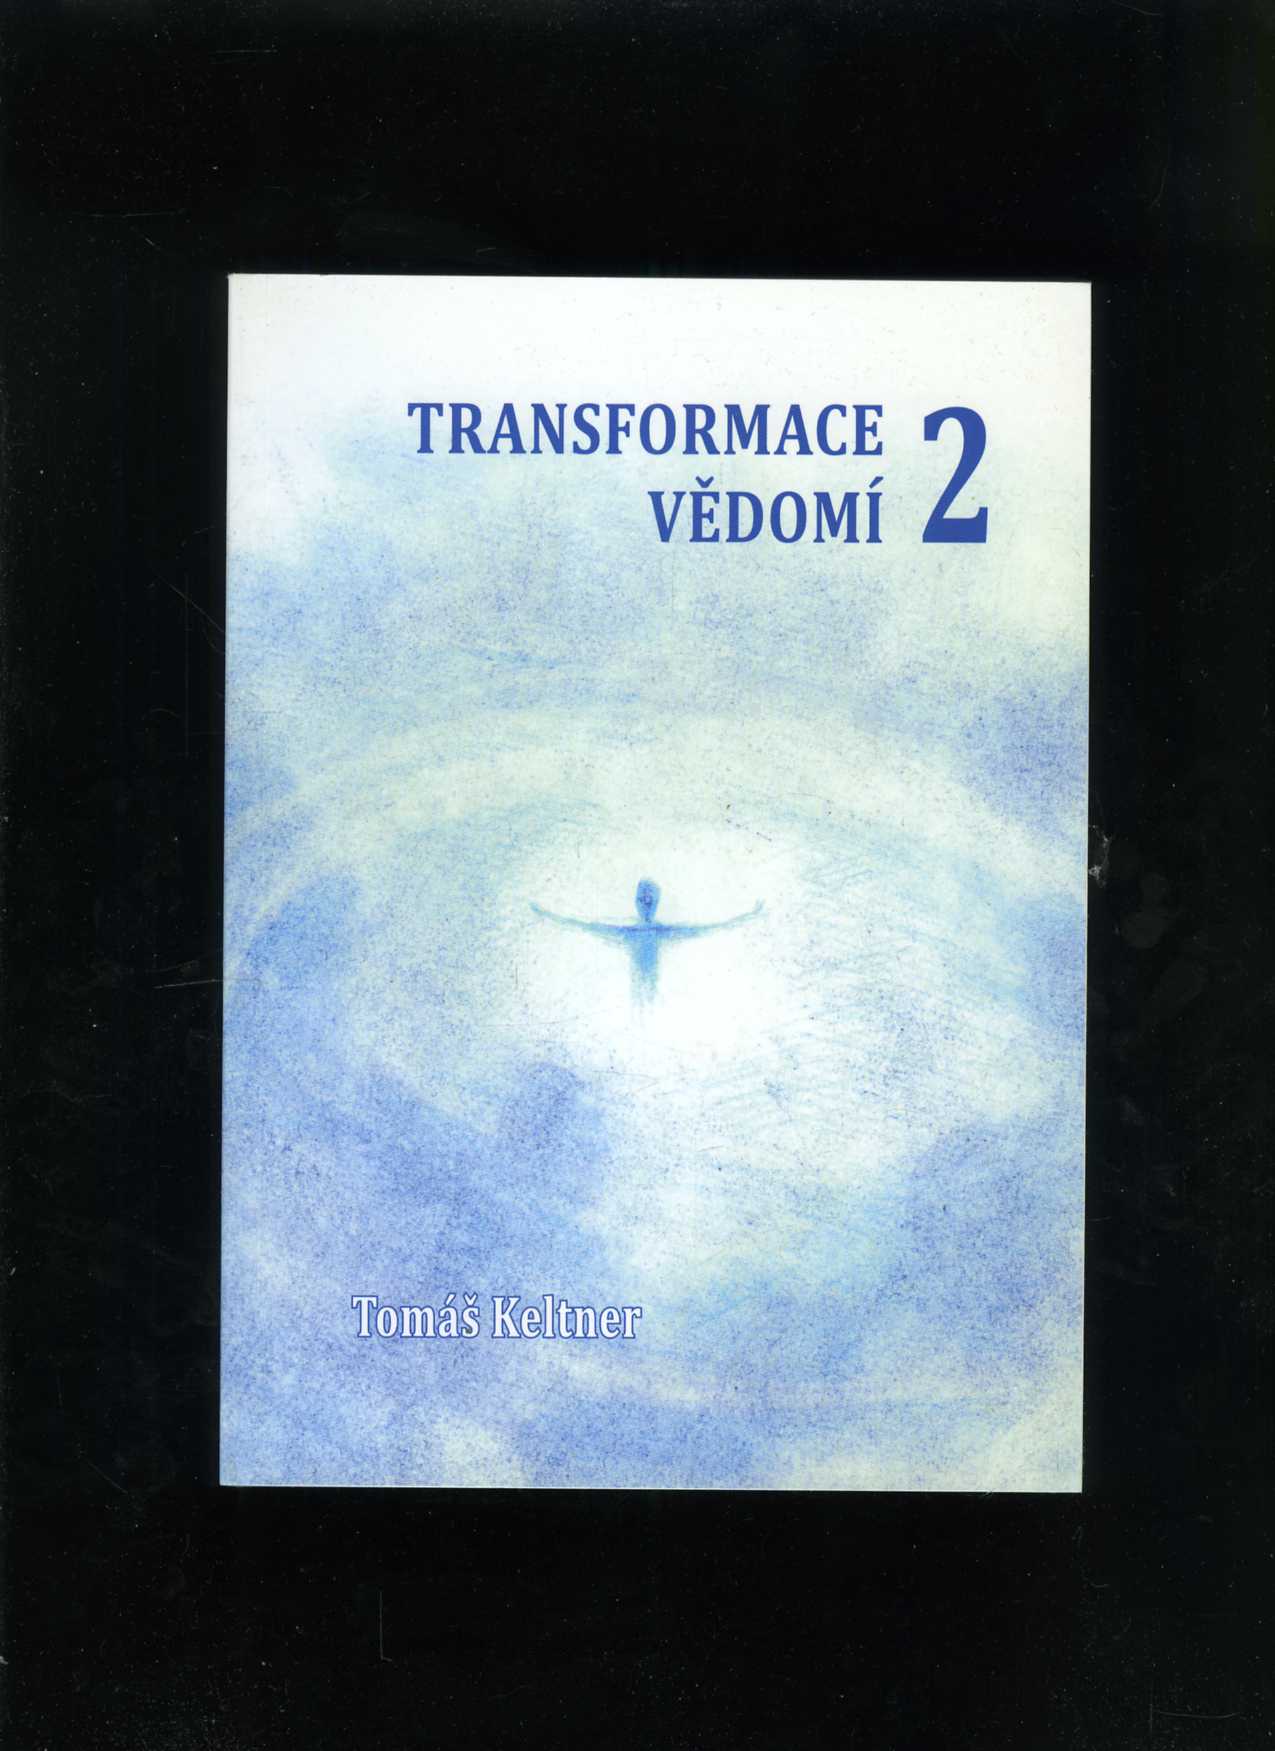 Transformace vědomí 2 (Tomáš Keltner)